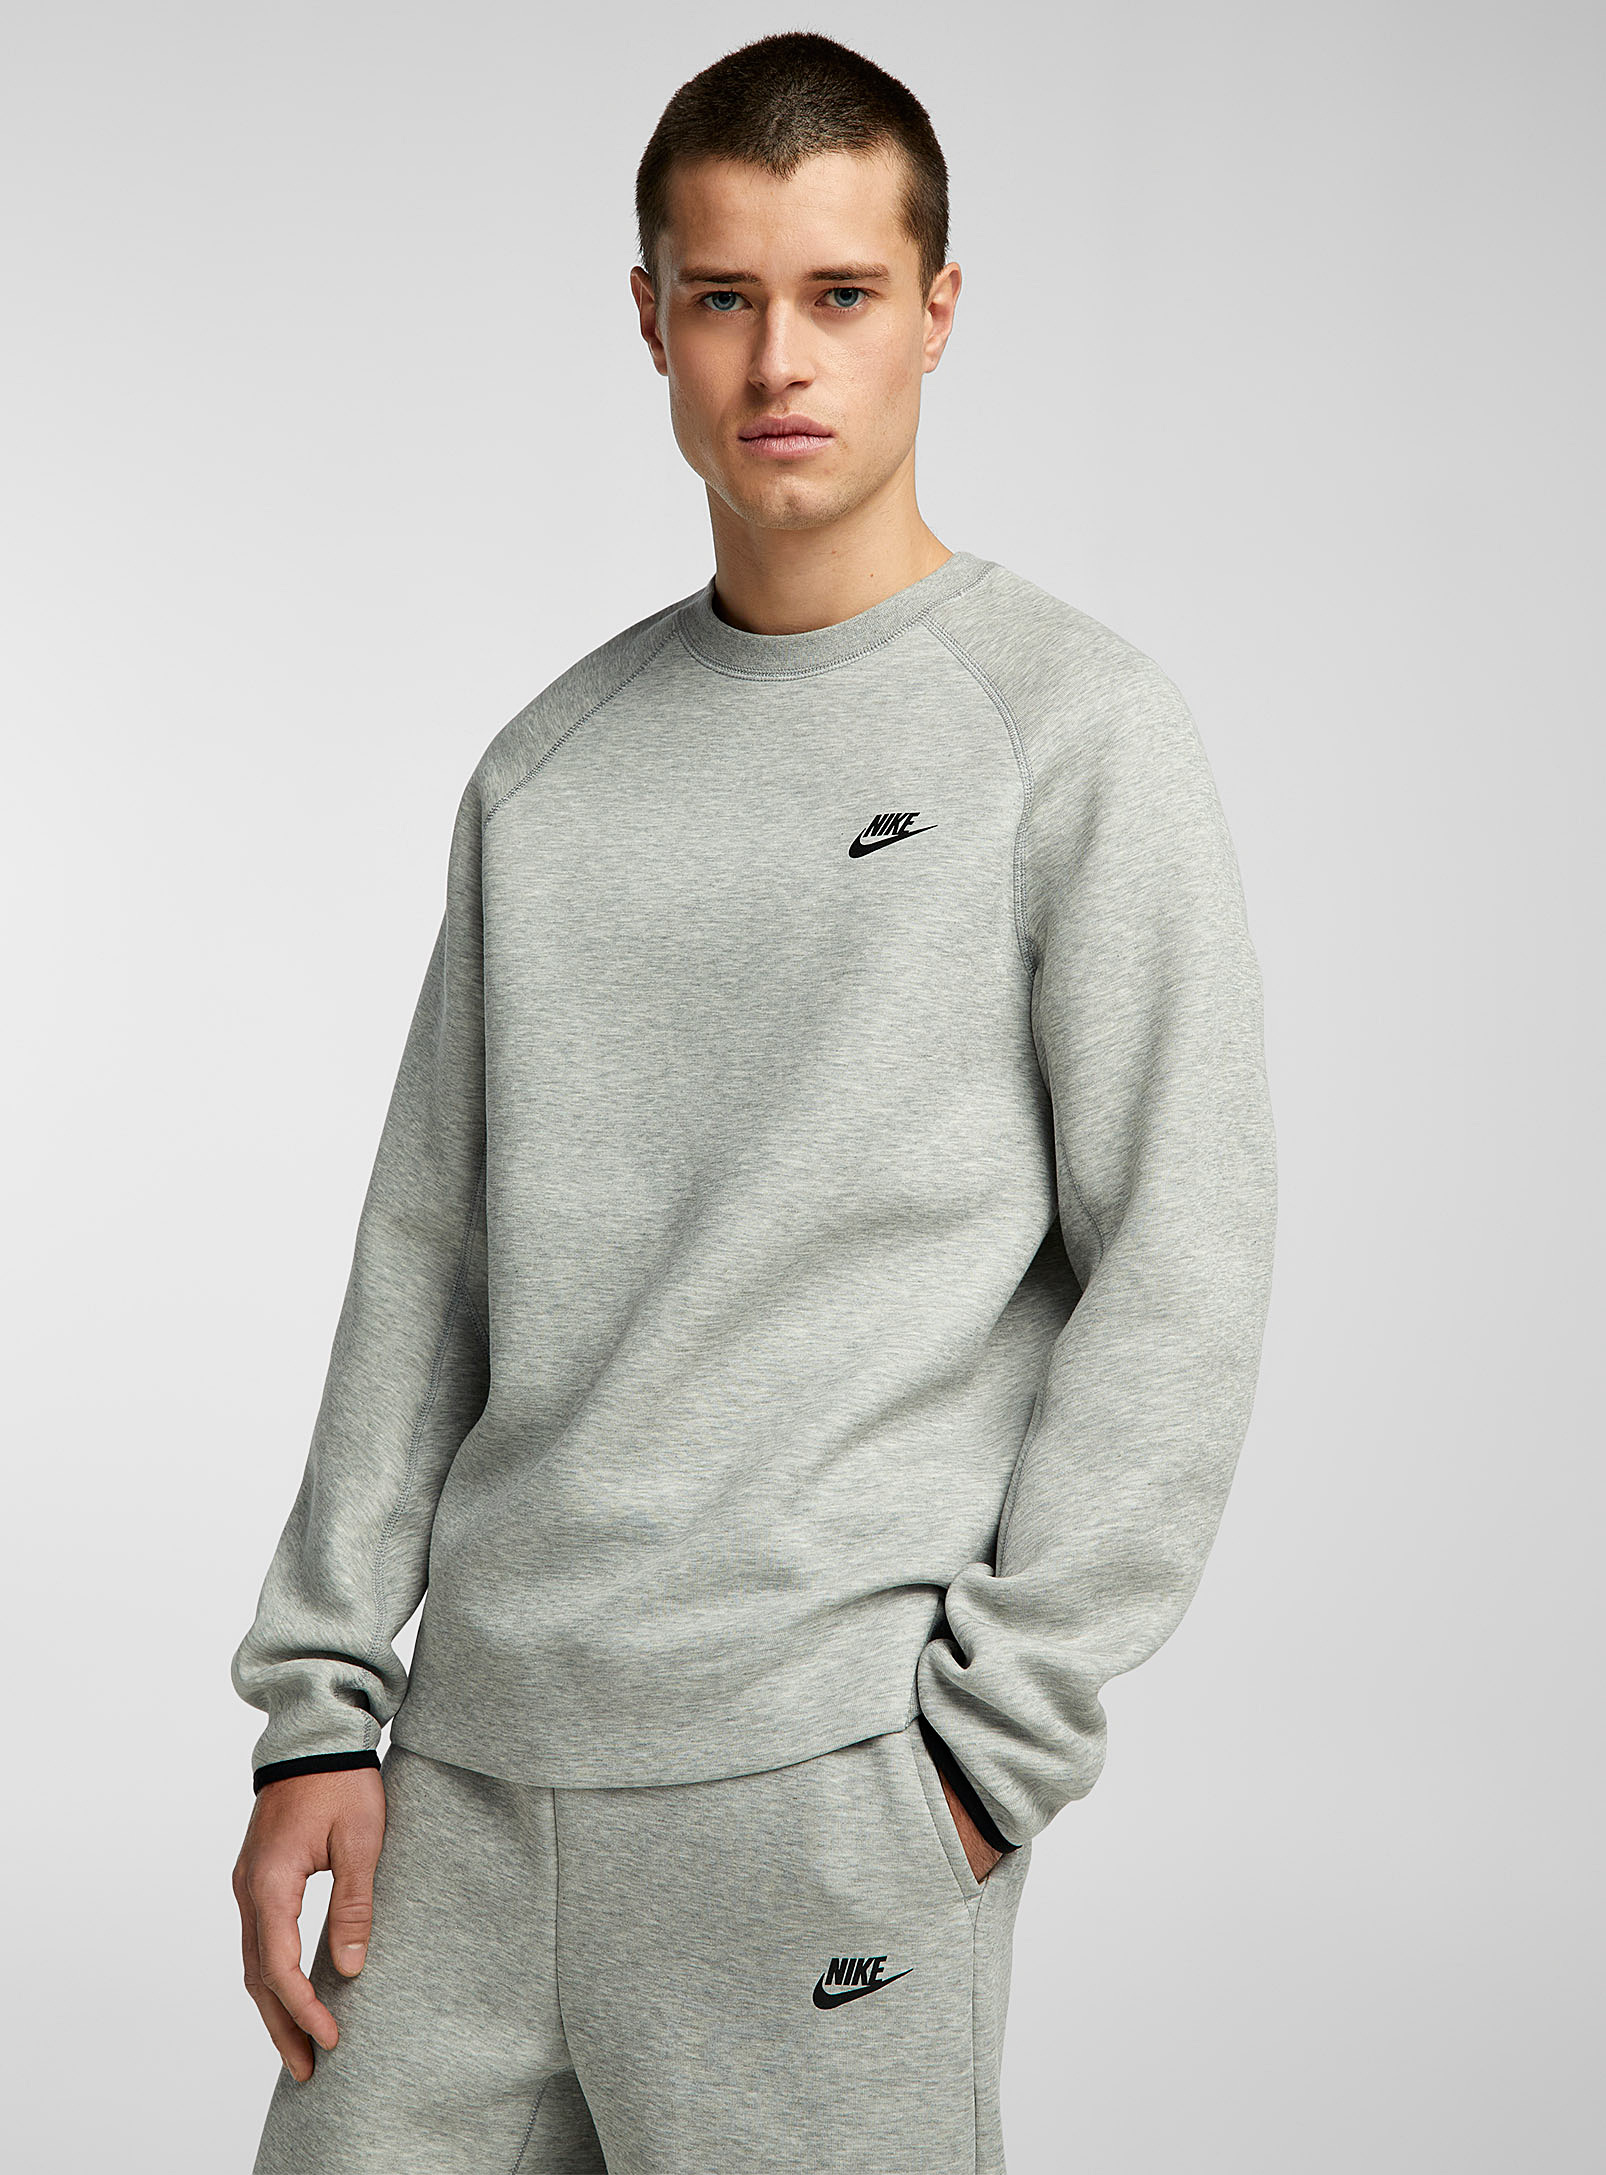 Nike Tech Fleece Raglan Sweatshirt In Light Grey